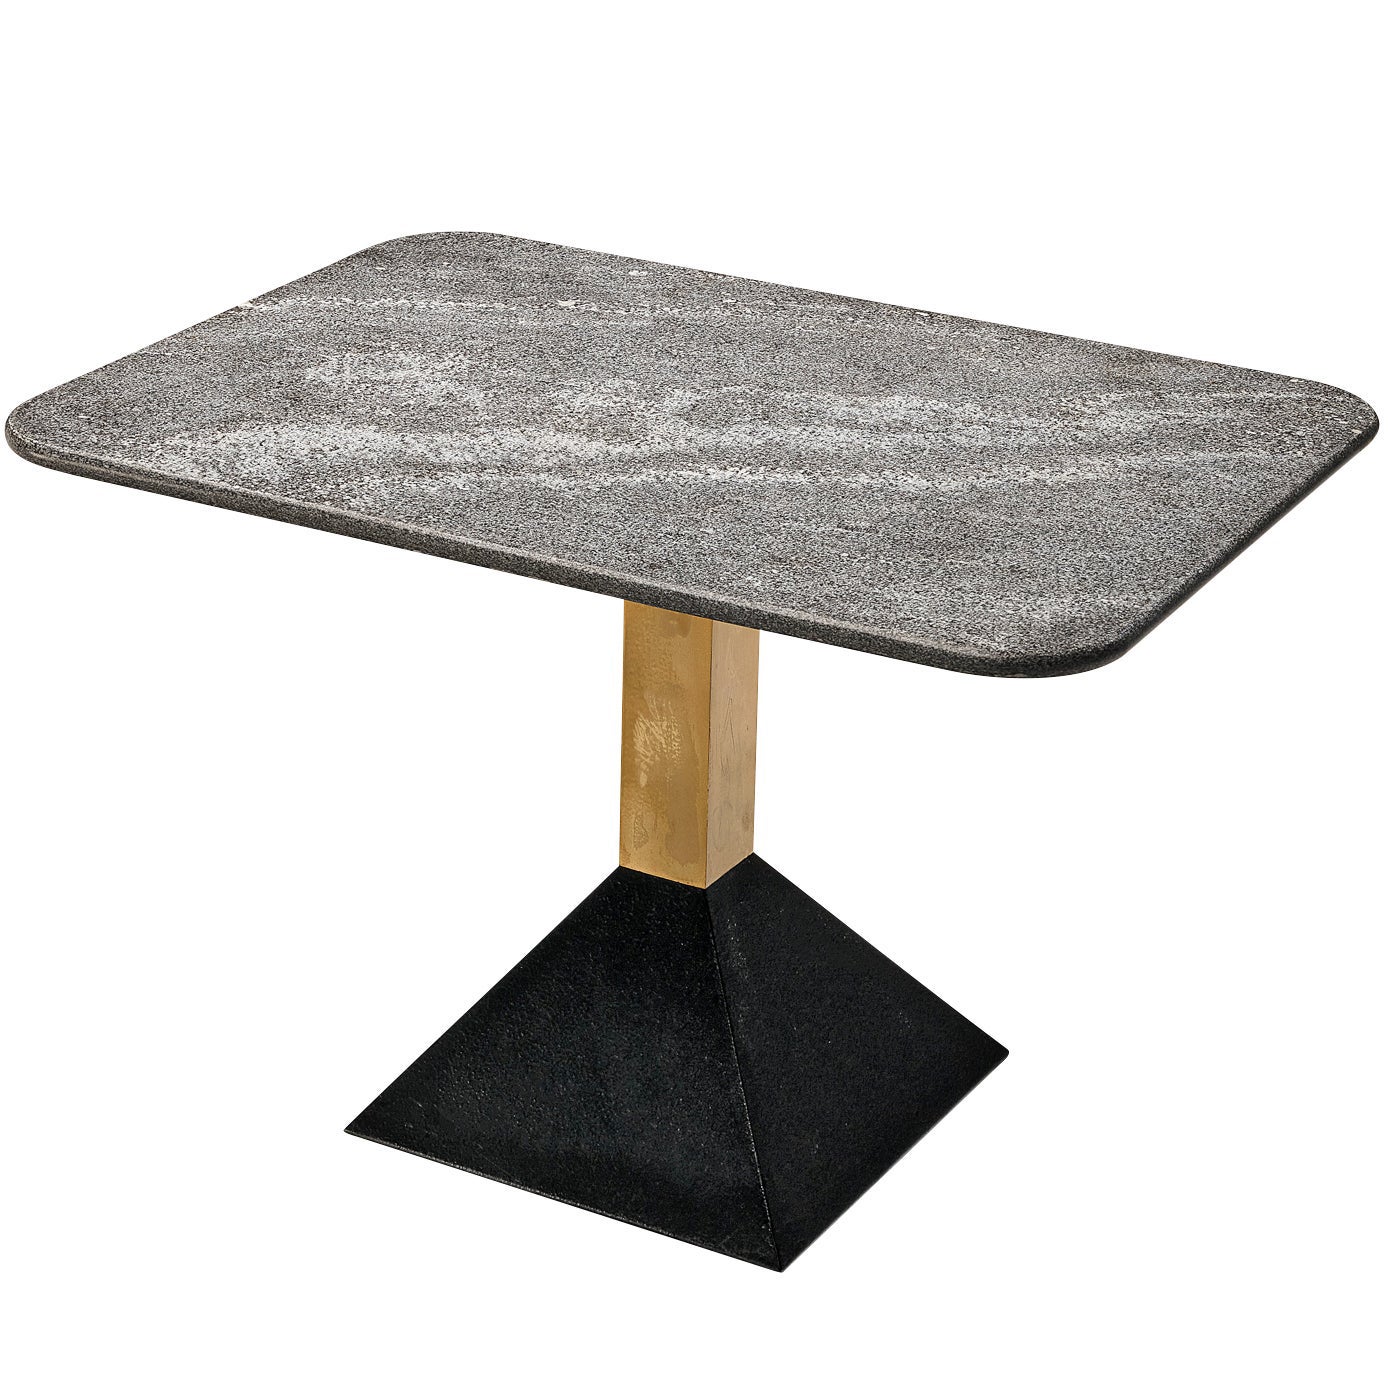 Table d'appoint italienne en métal et plateau rectangulaire en granit